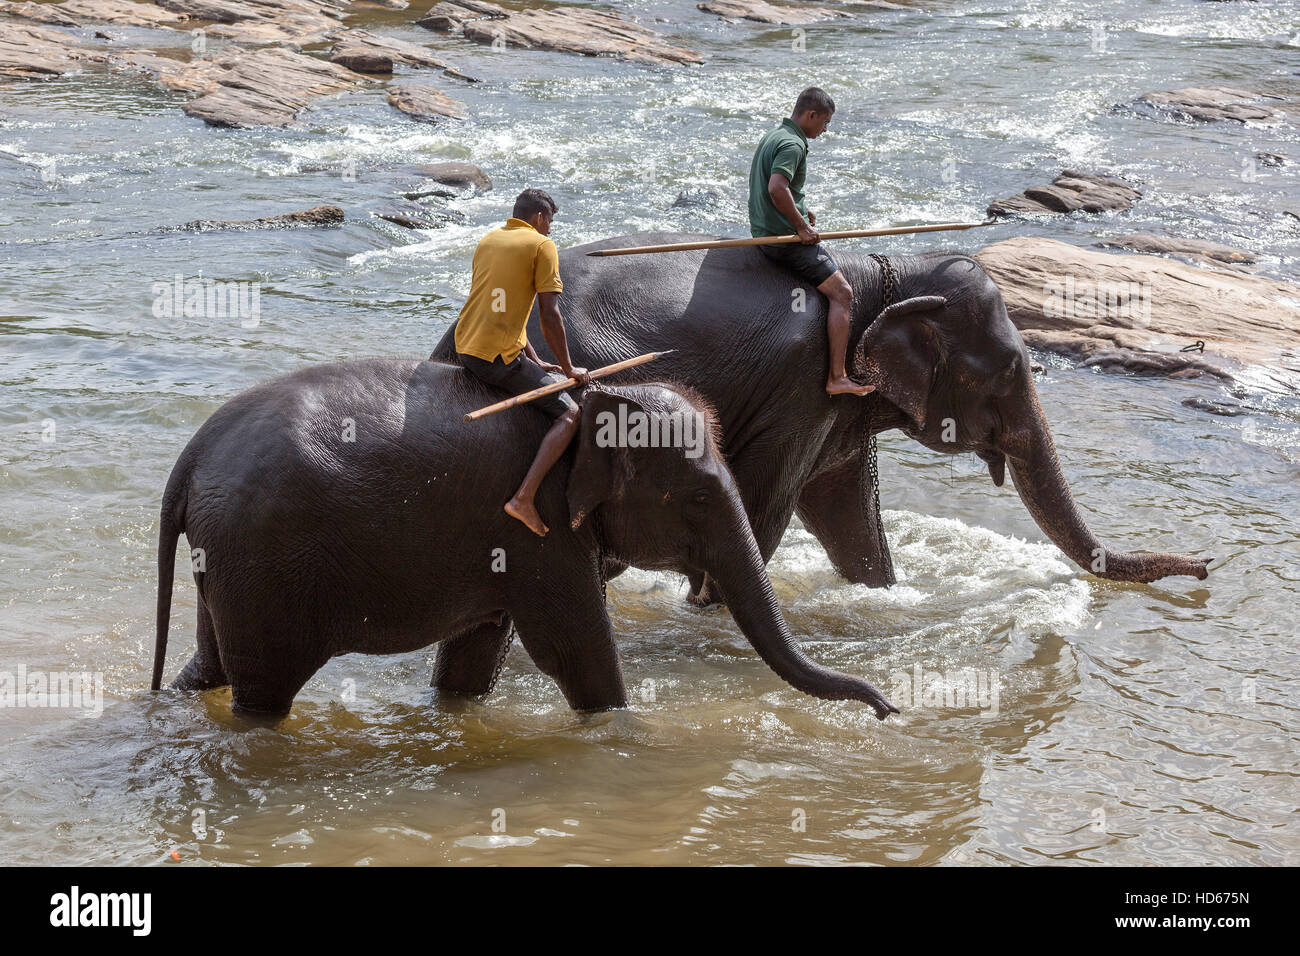 Mahouts ride Asian elephants (Elephas maximus), Maha Oya River, Pinnawala Elephant Orphanage, Central Province, Sri Lanka Stock Photo